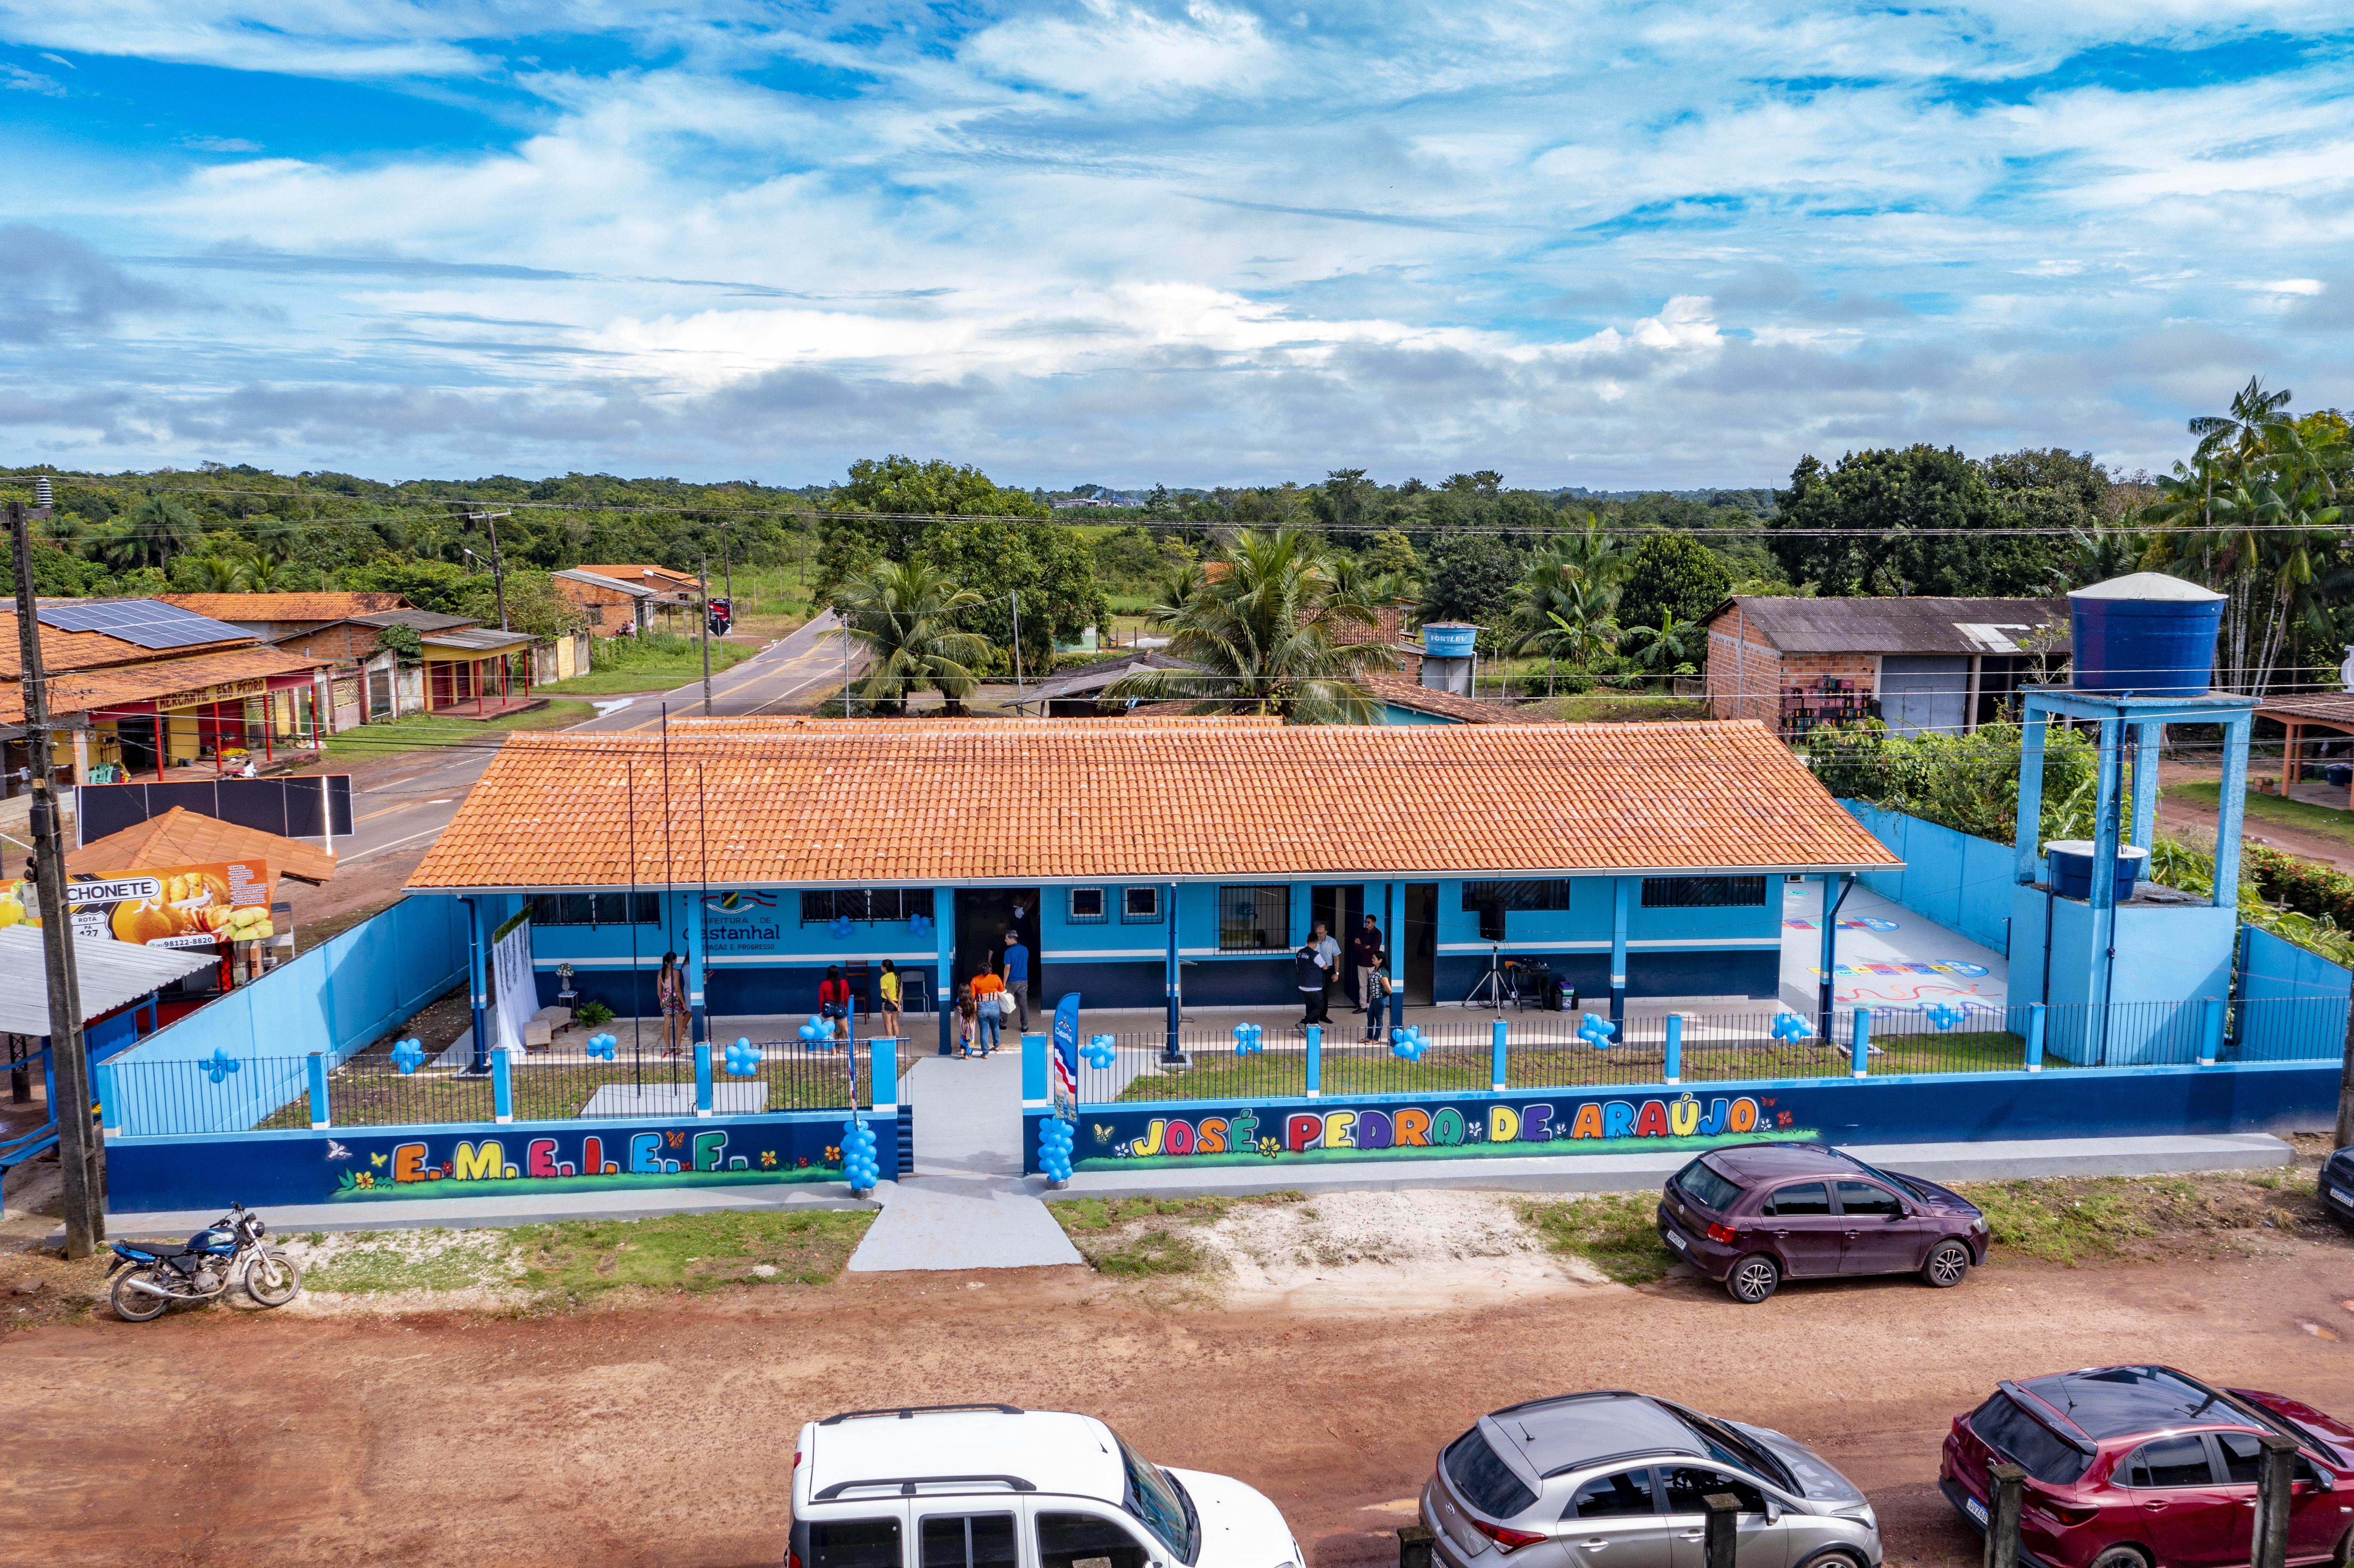 No Tipizal, Prefeitura entrega escola reformada e ampliada, Educação, Notícias